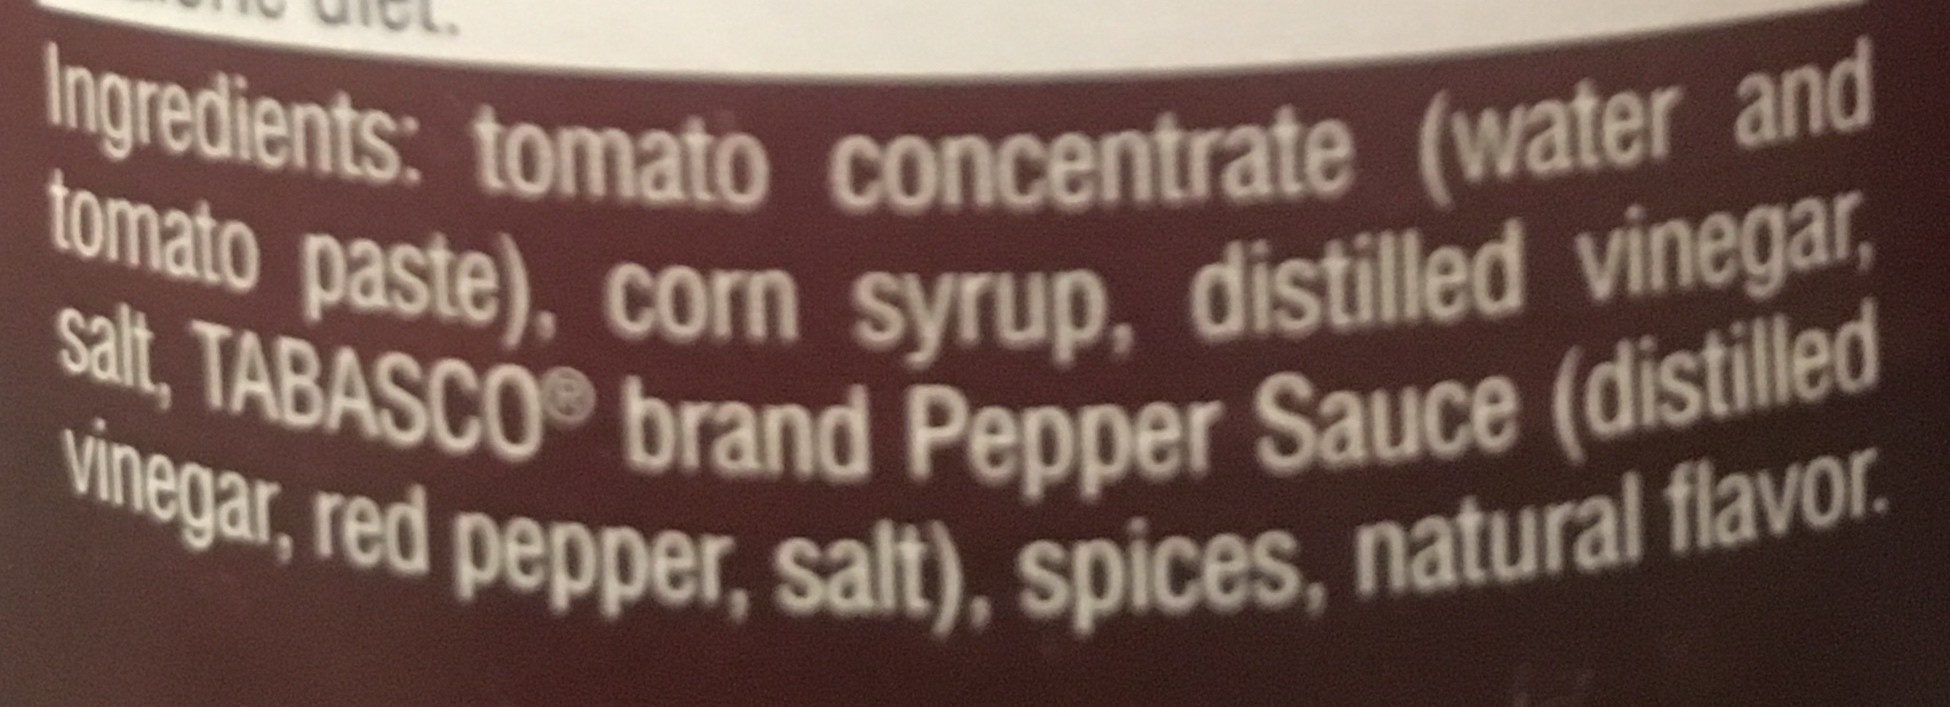 Spicy ketchup - Ingredients